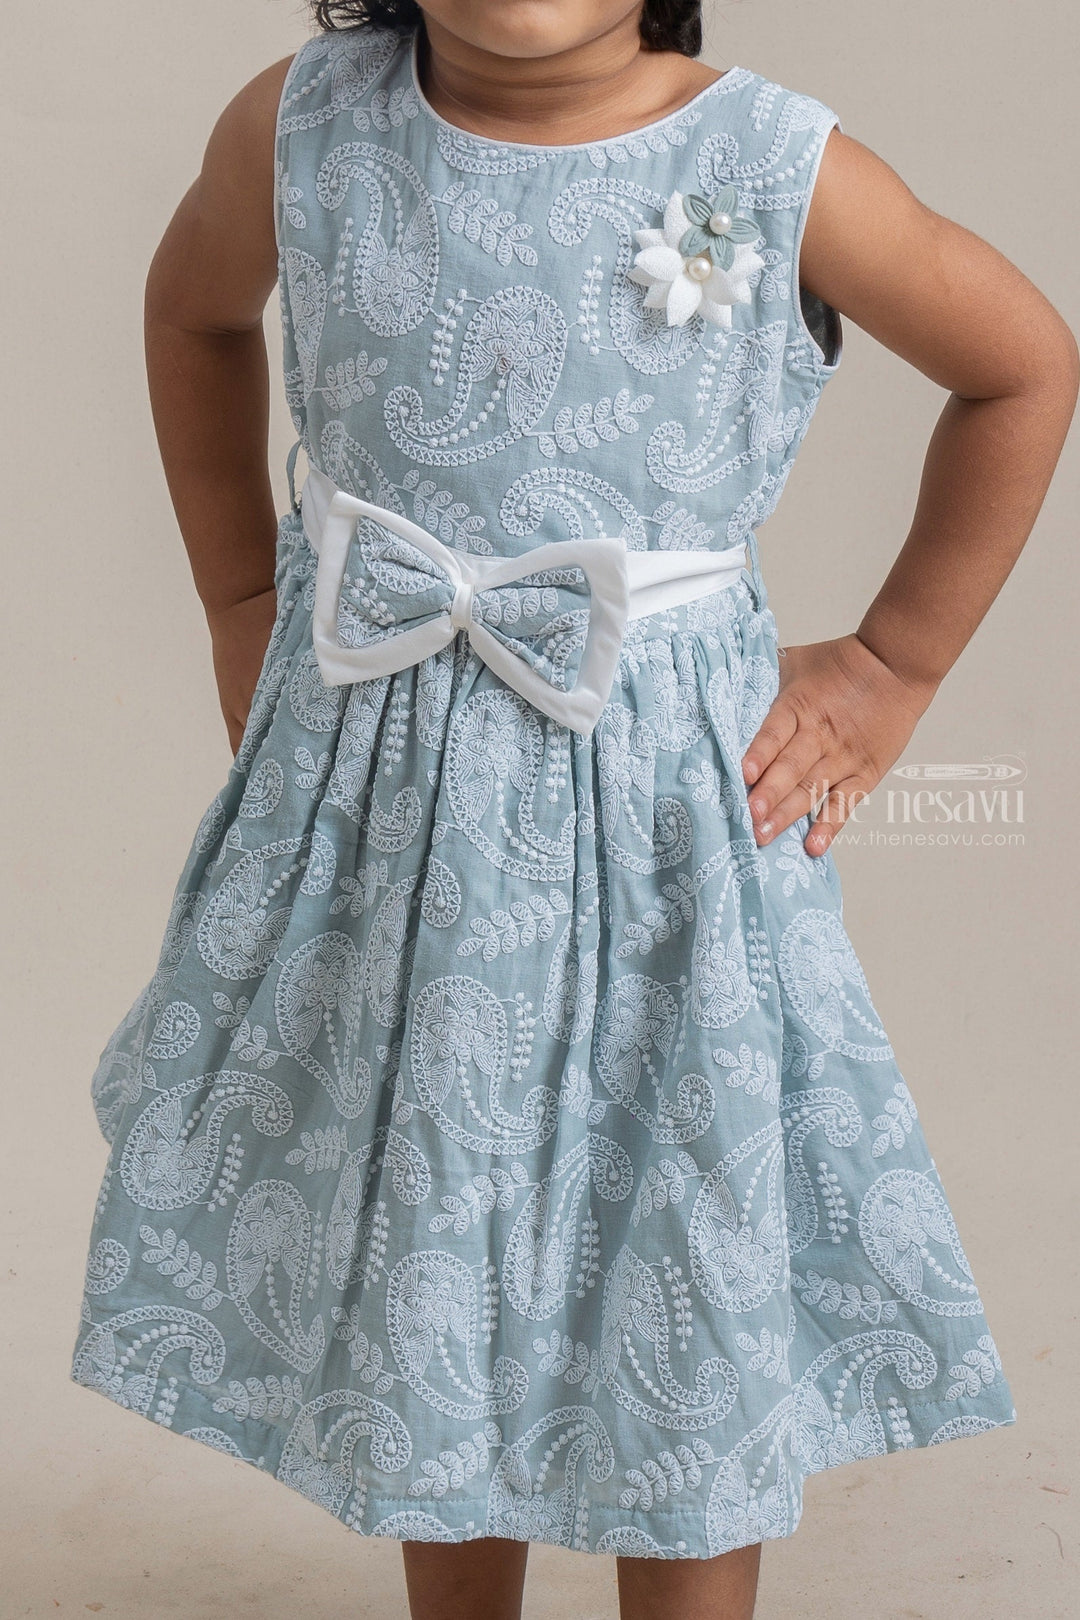 The Nesavu Frocks & Dresses Pretty Paiseley Embroidered Sleeveless Blue Cotton Frock For Little Girls psr silks Nesavu